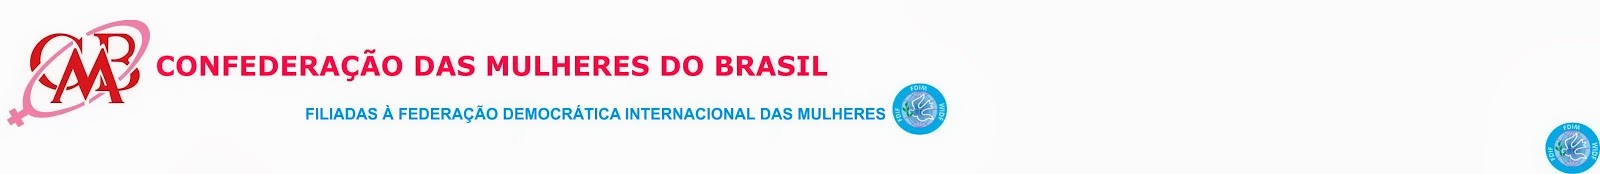 Confederação das Mulheres do Brasil